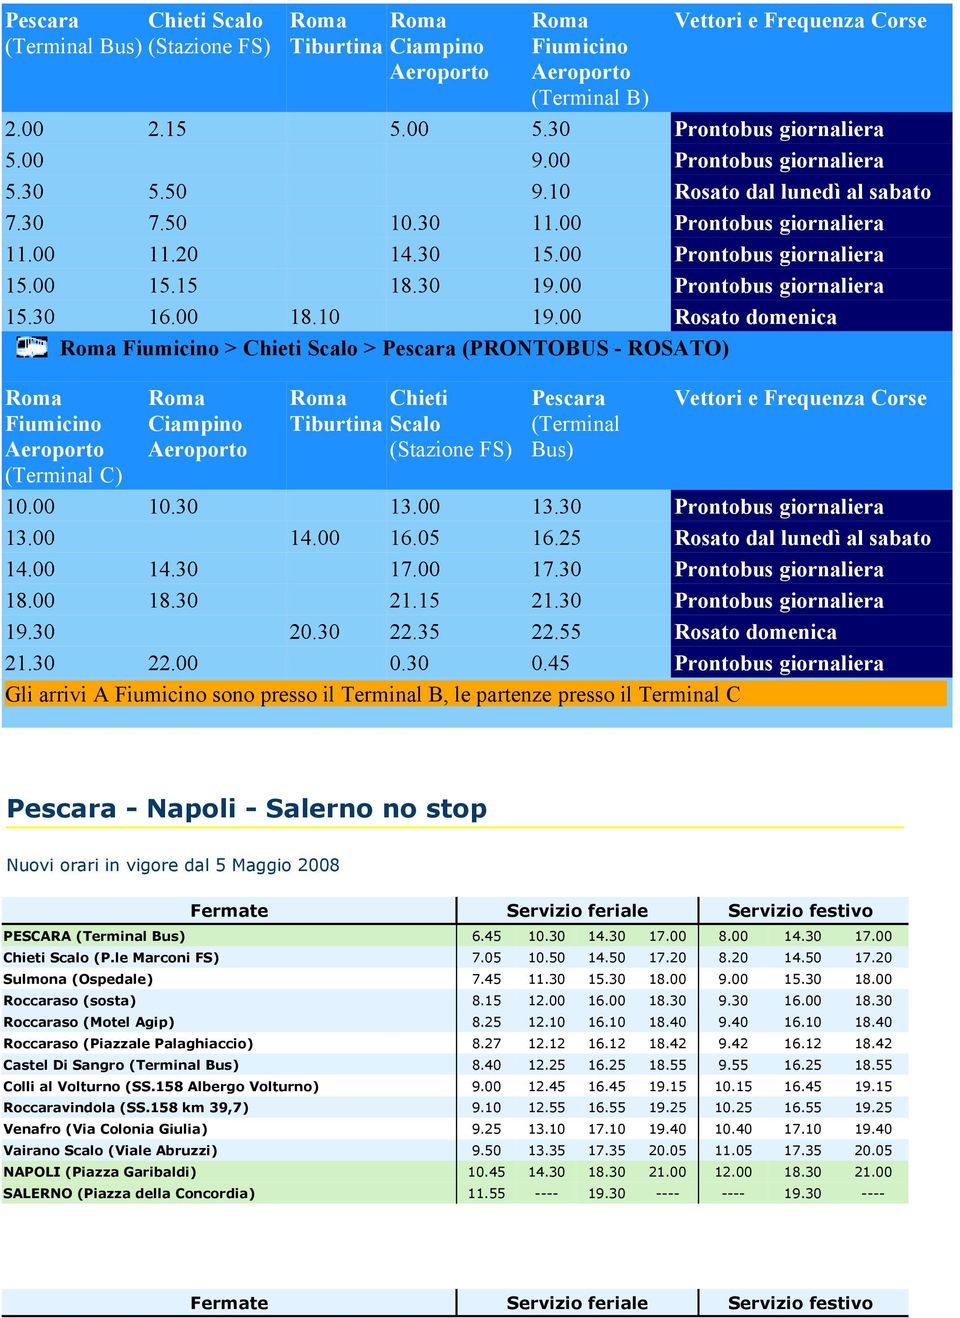 00 Rosato domenica Fiumicino > Chieti Scalo > Pescara (PRONTOBUS - ROSATO) Fiumicino (Terminal C) Ciampino Chieti Tiburtina Scalo (Stazione FS) Pescara (Terminal Bus) Vettori e Frequenza Corse 10.